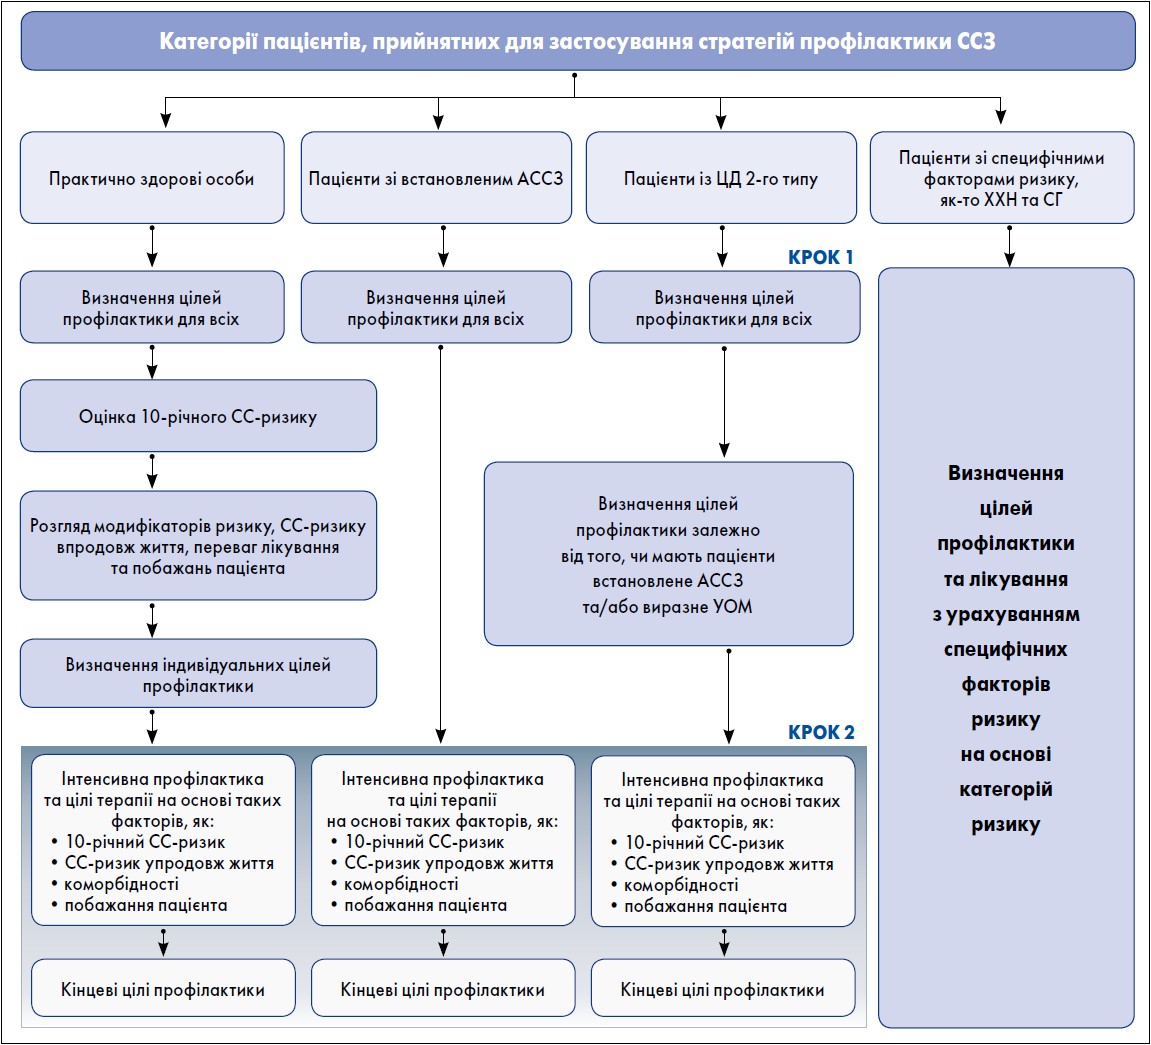 Рисунок. Поетапний підхід до стратифікації ризику та визначення варіантів лікування  відповідно до рекомендацій ESC із профілактики ССЗ